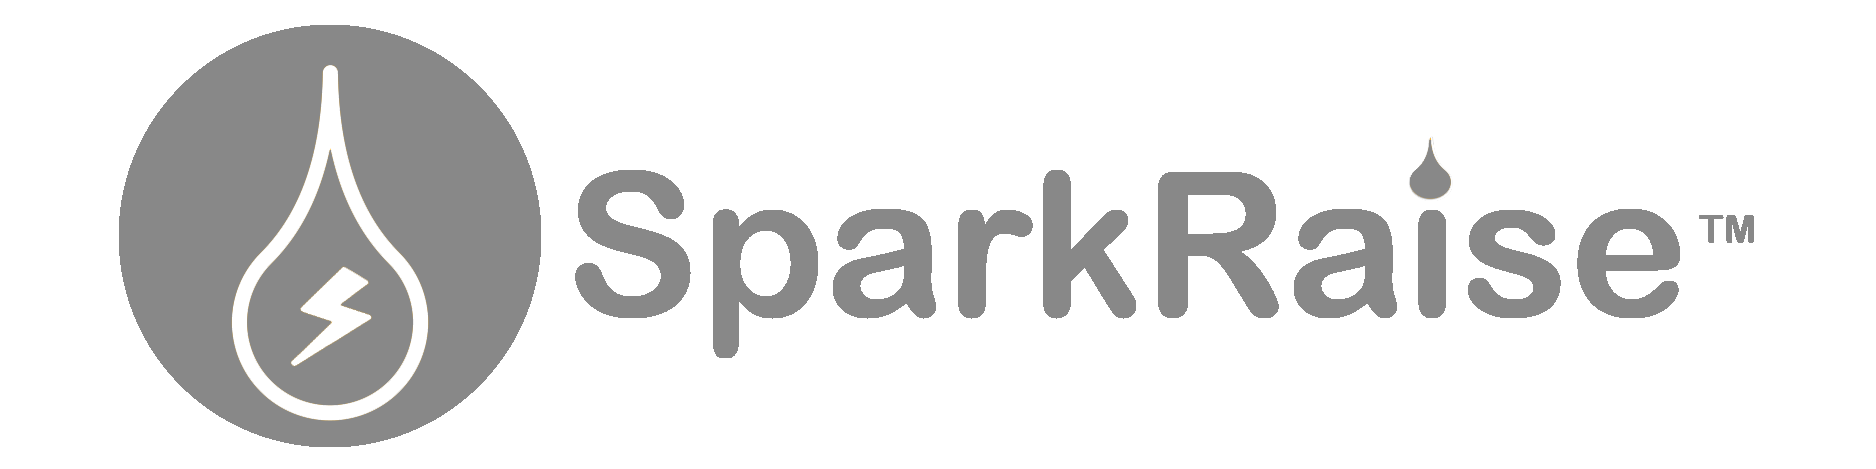 SparkRaise Logo